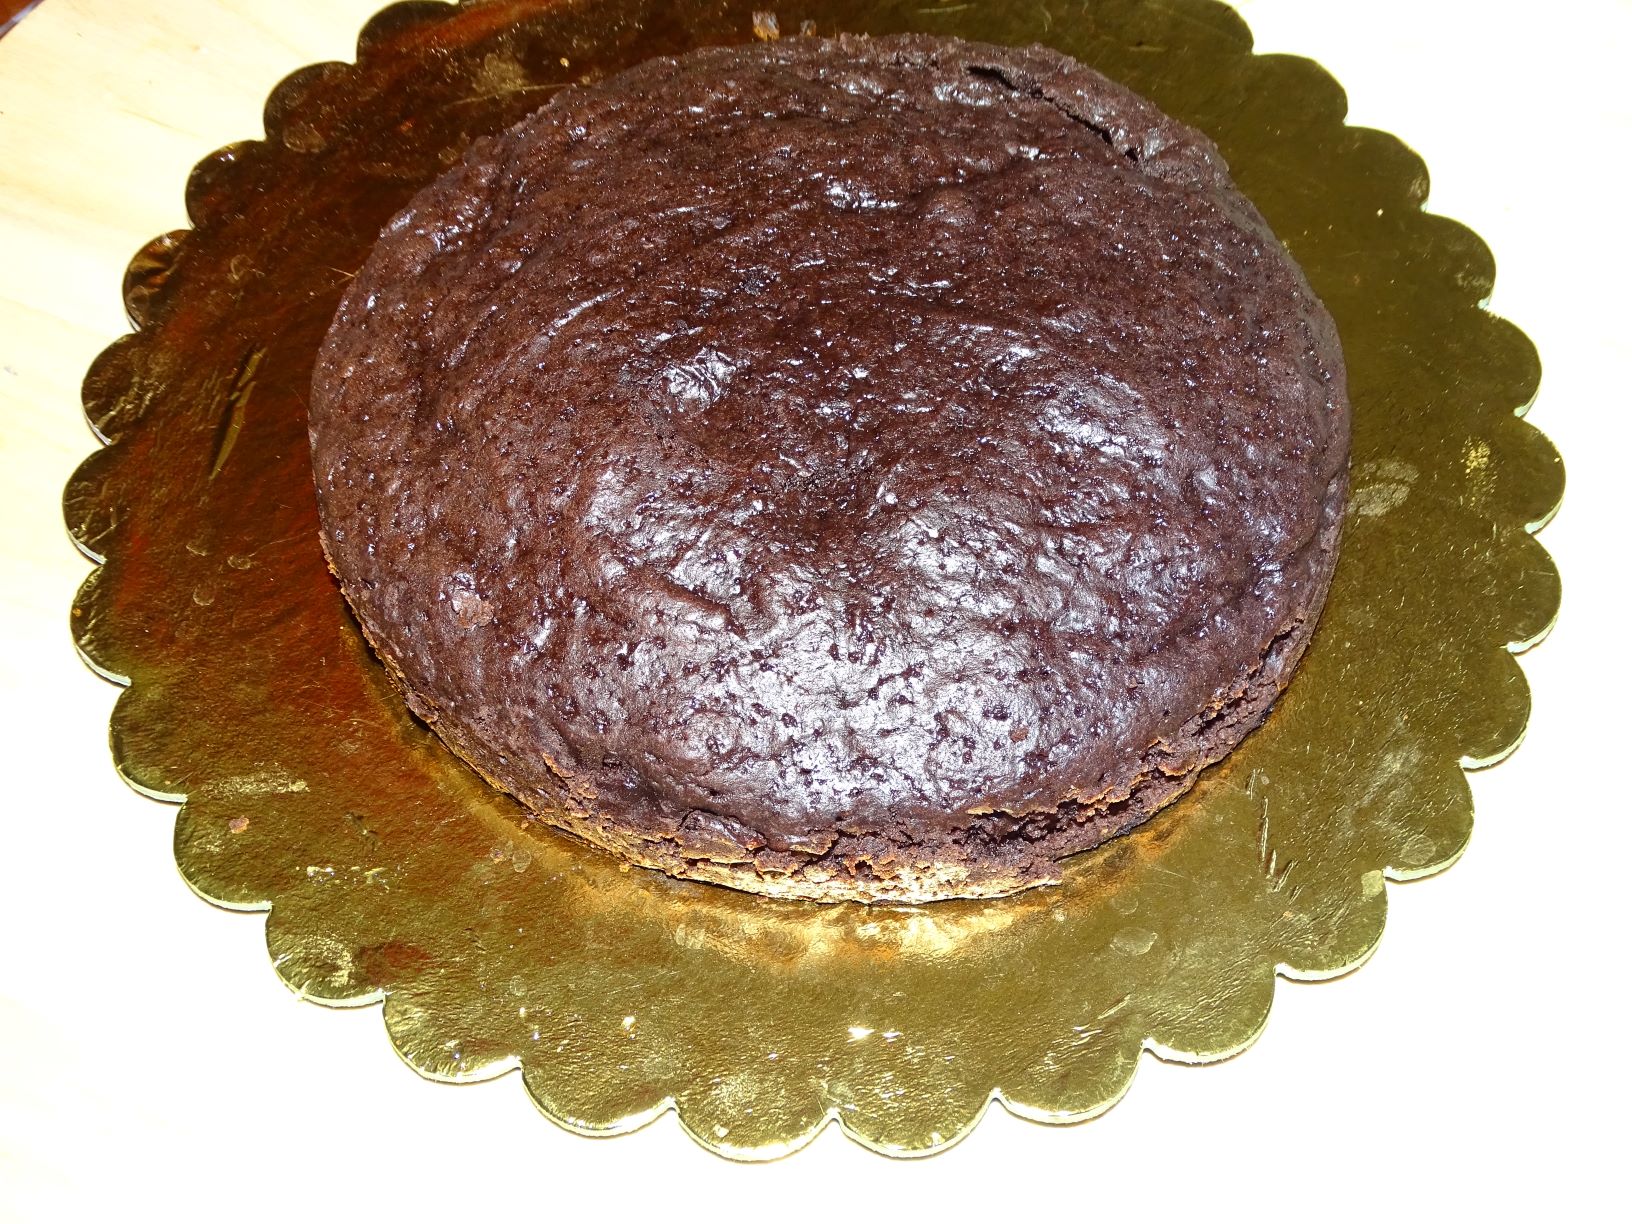 Desert tort cheesecake Tuxedo